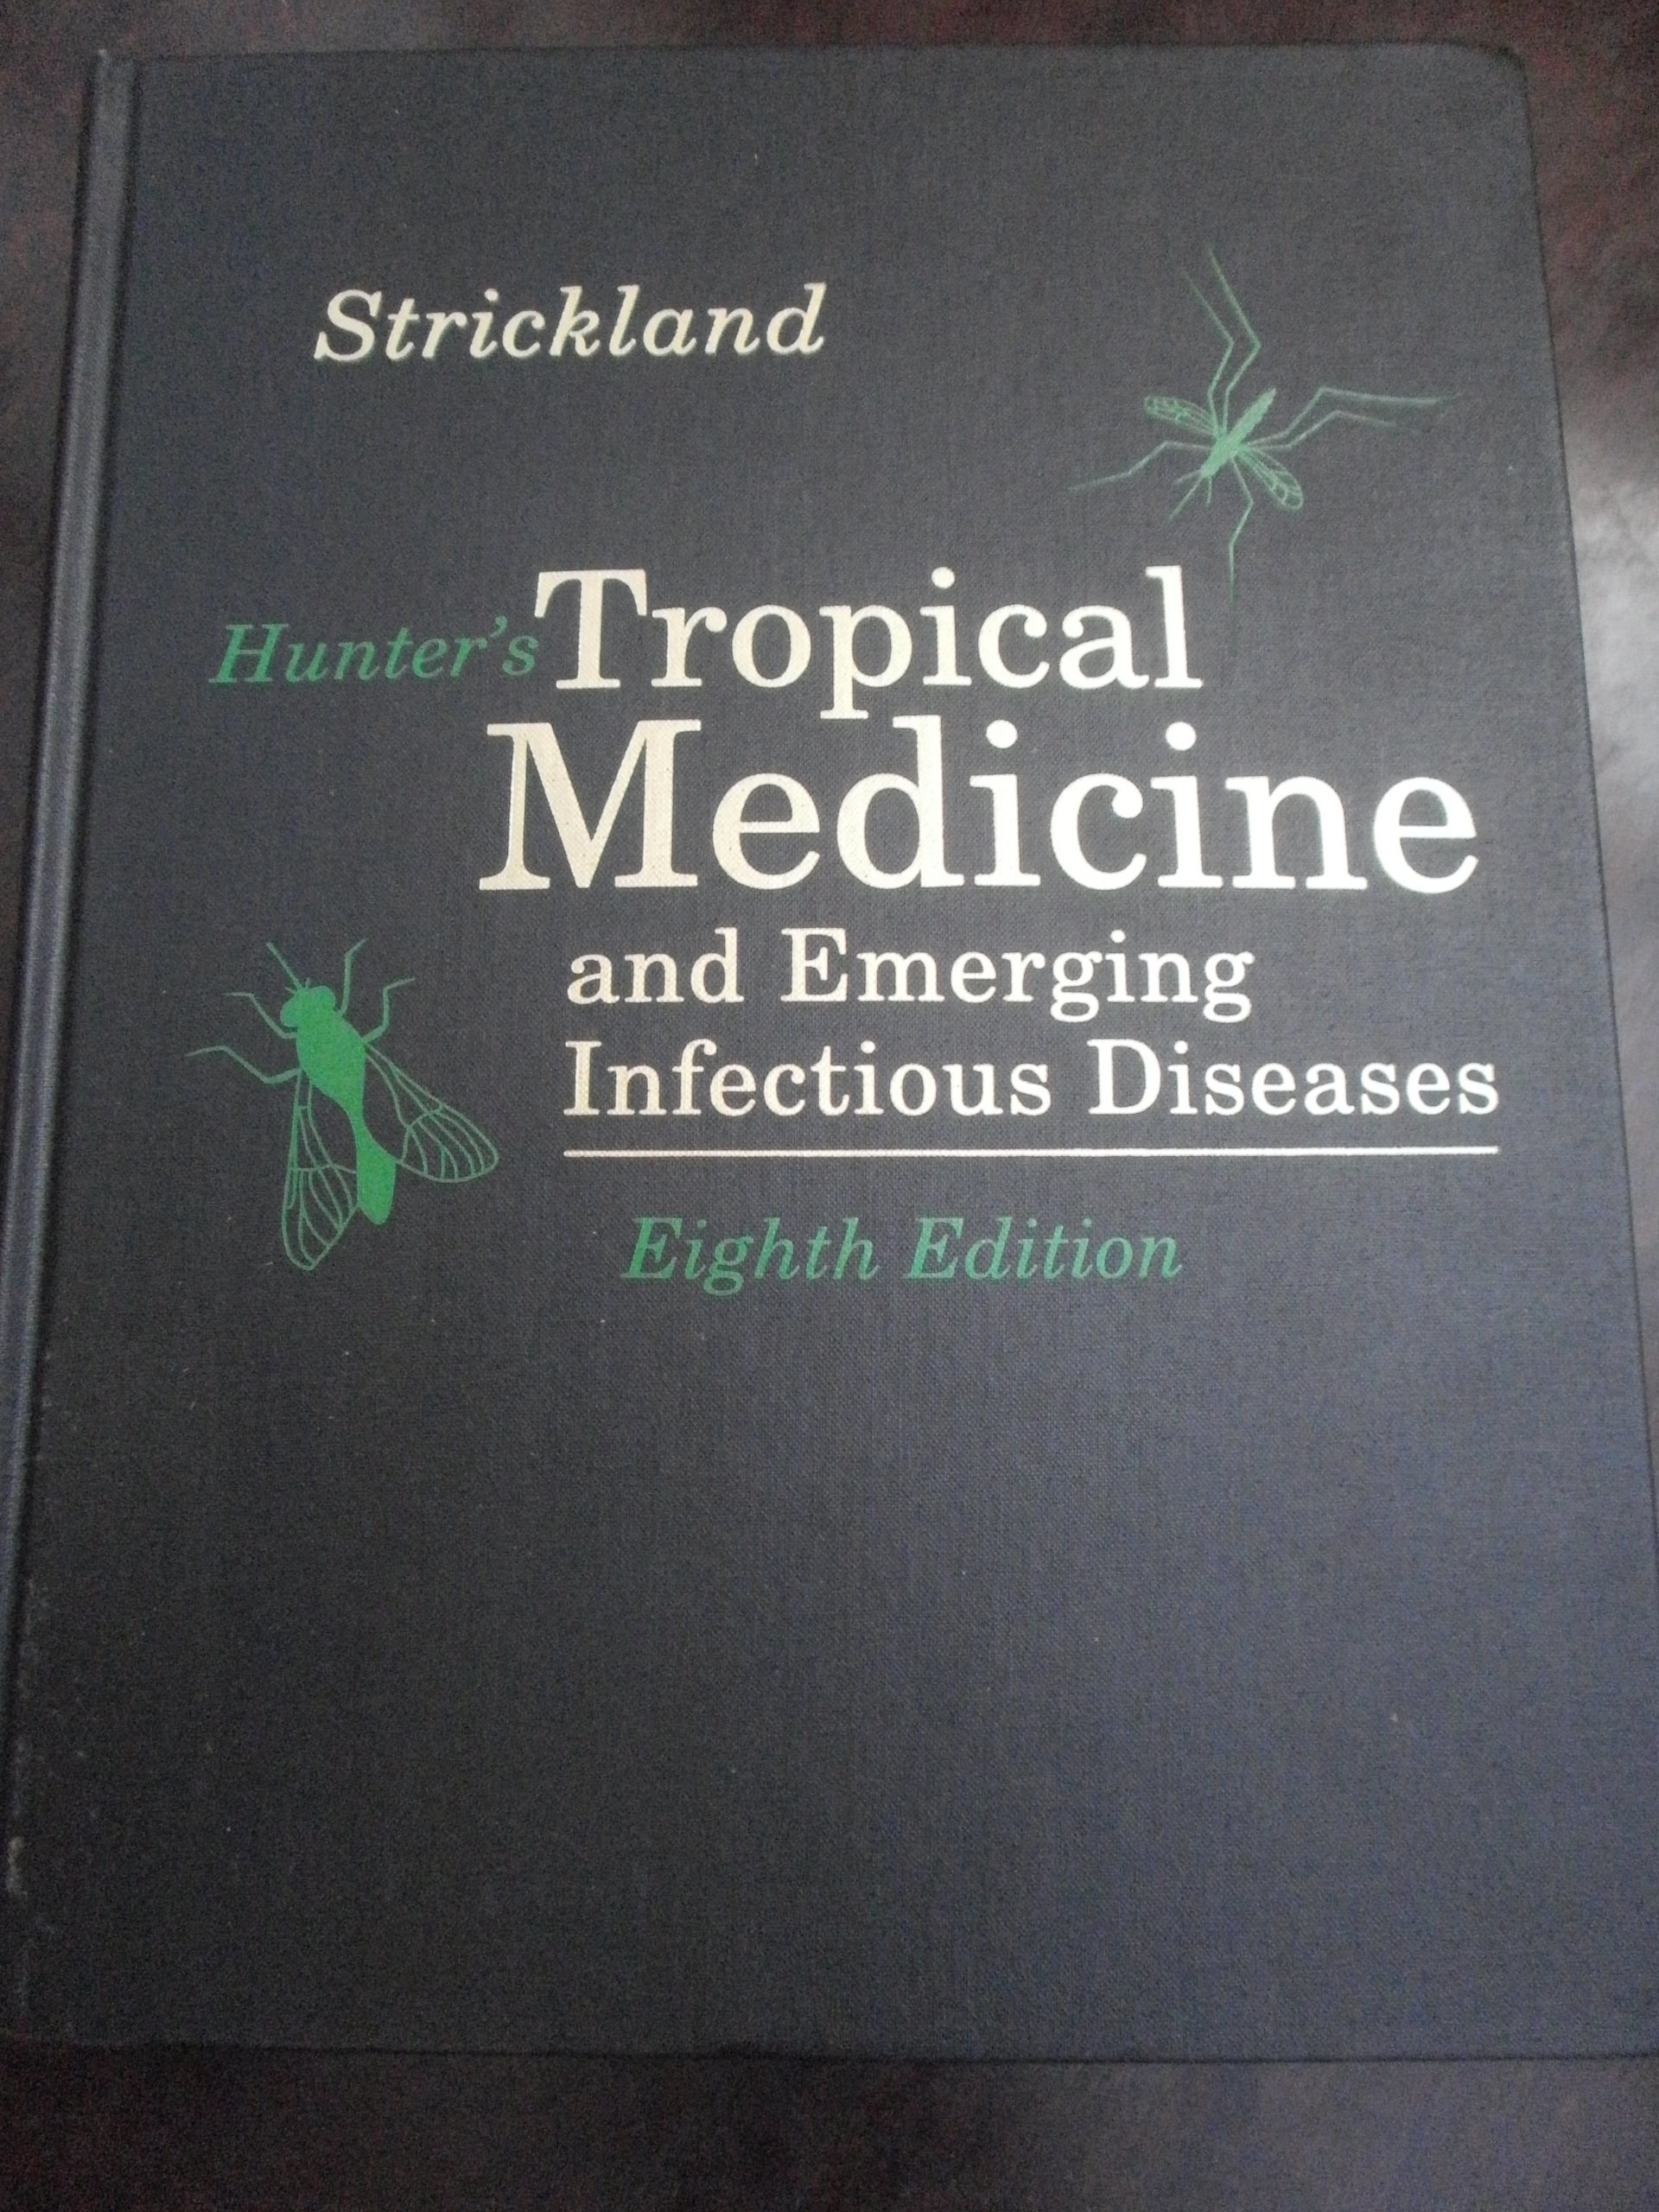 tropical medicine book review